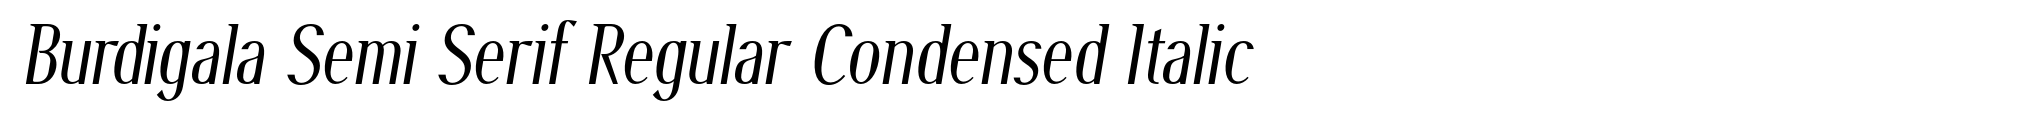 Burdigala Semi Serif Regular Condensed Italic image